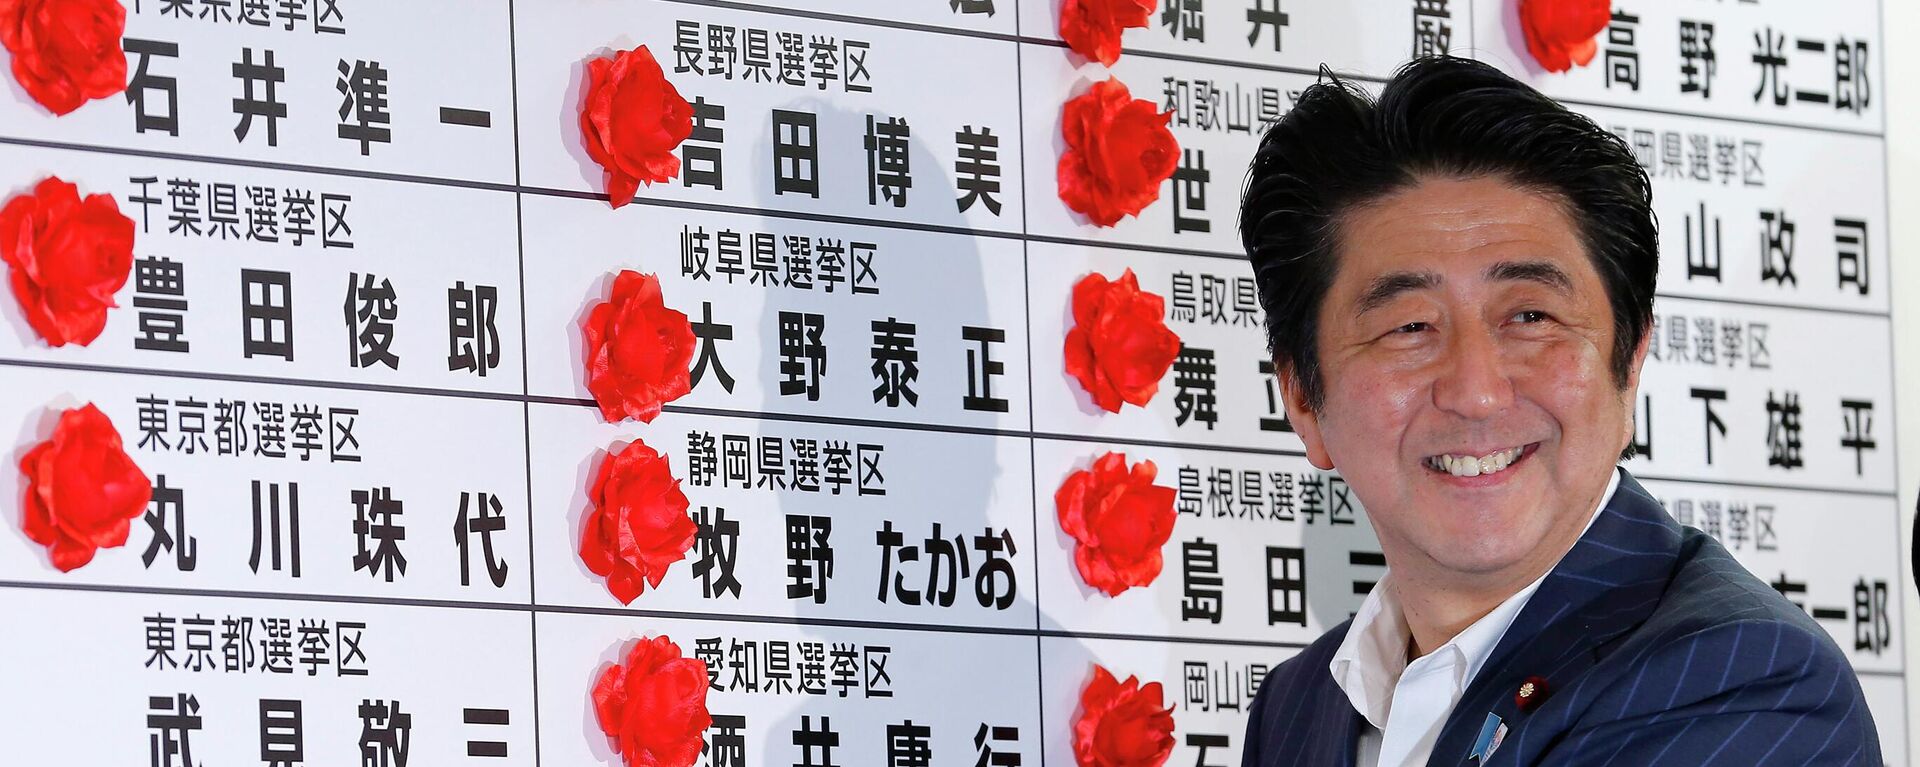 Shinzo Abe, ex primer ministro de Japón (2012-2020)  - Sputnik Mundo, 1920, 08.07.2022